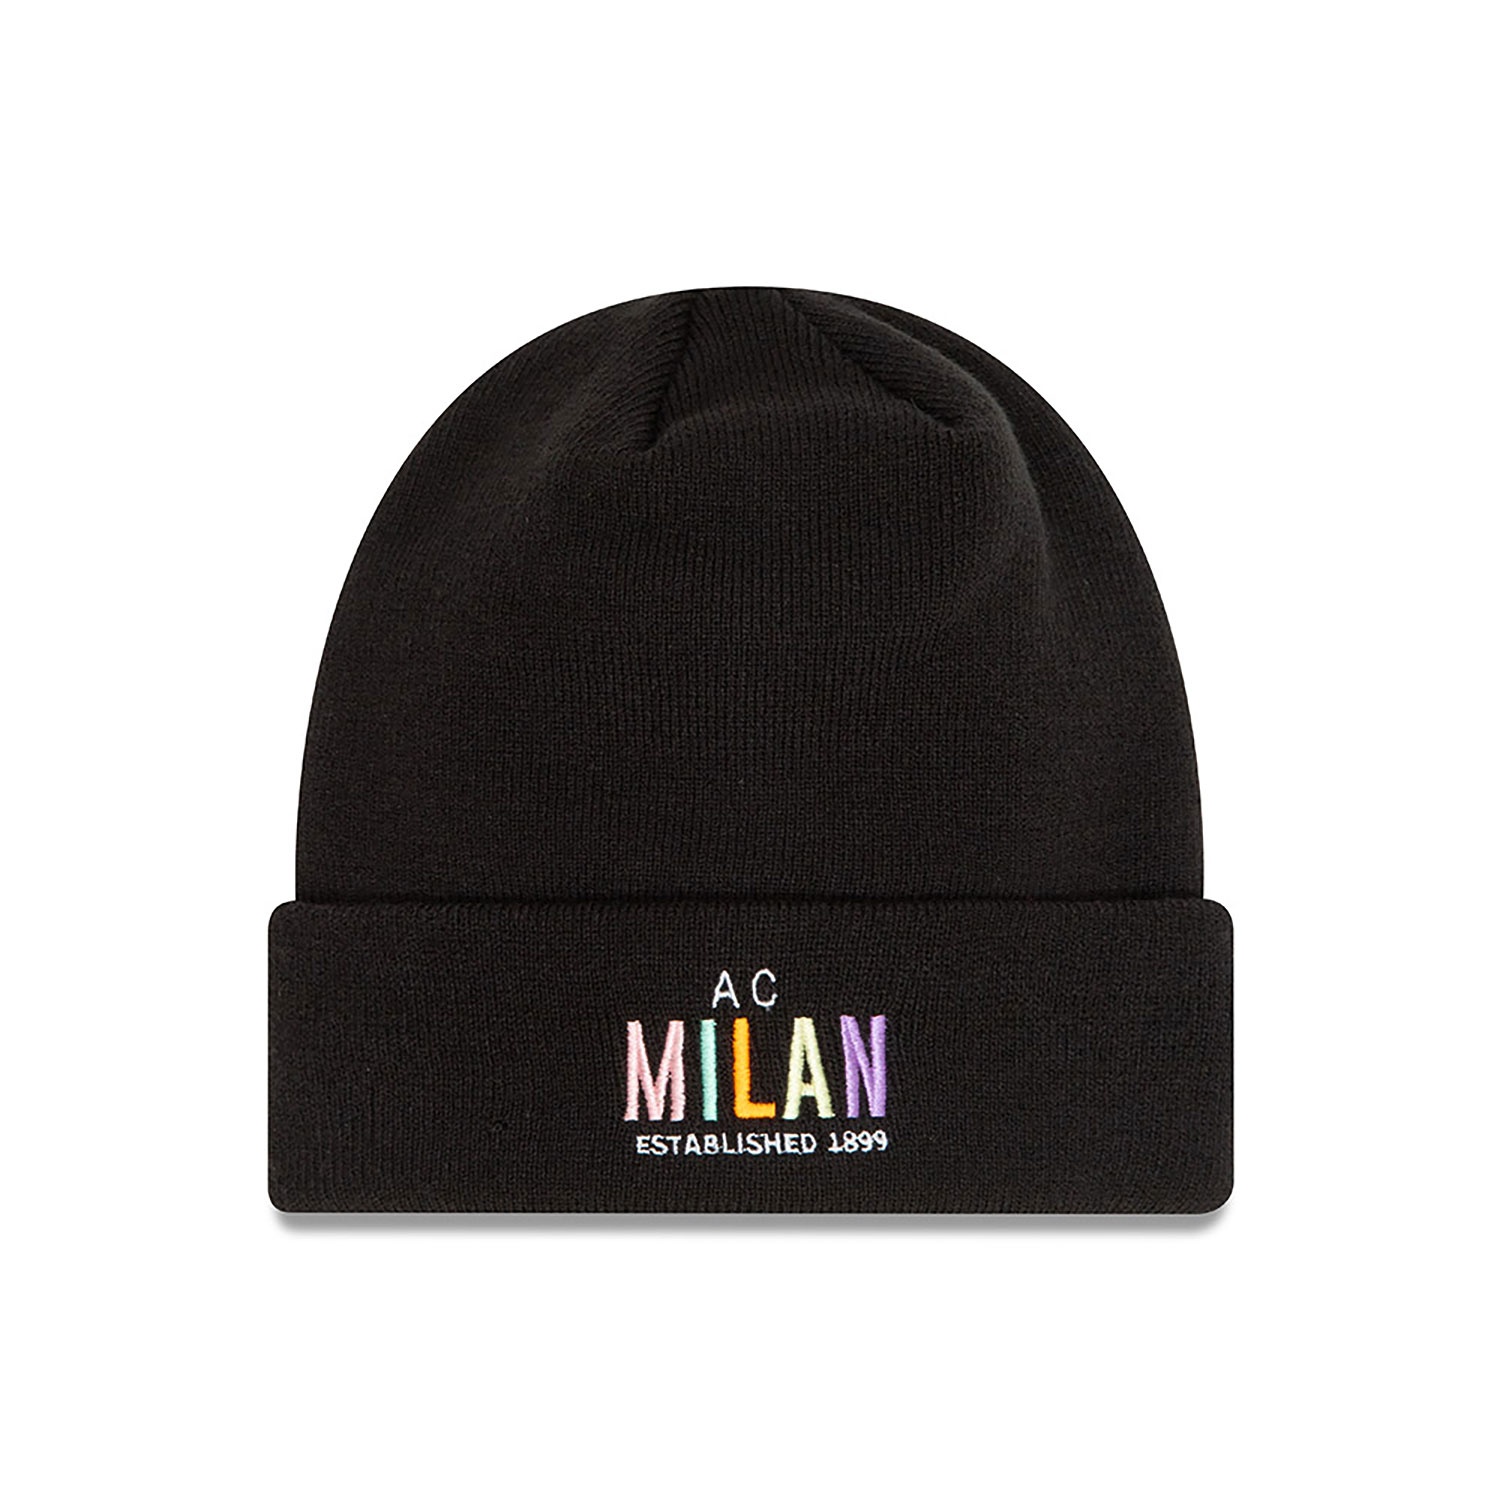 AC Milan Wordmark Black Cuff Knit Beanie Hat